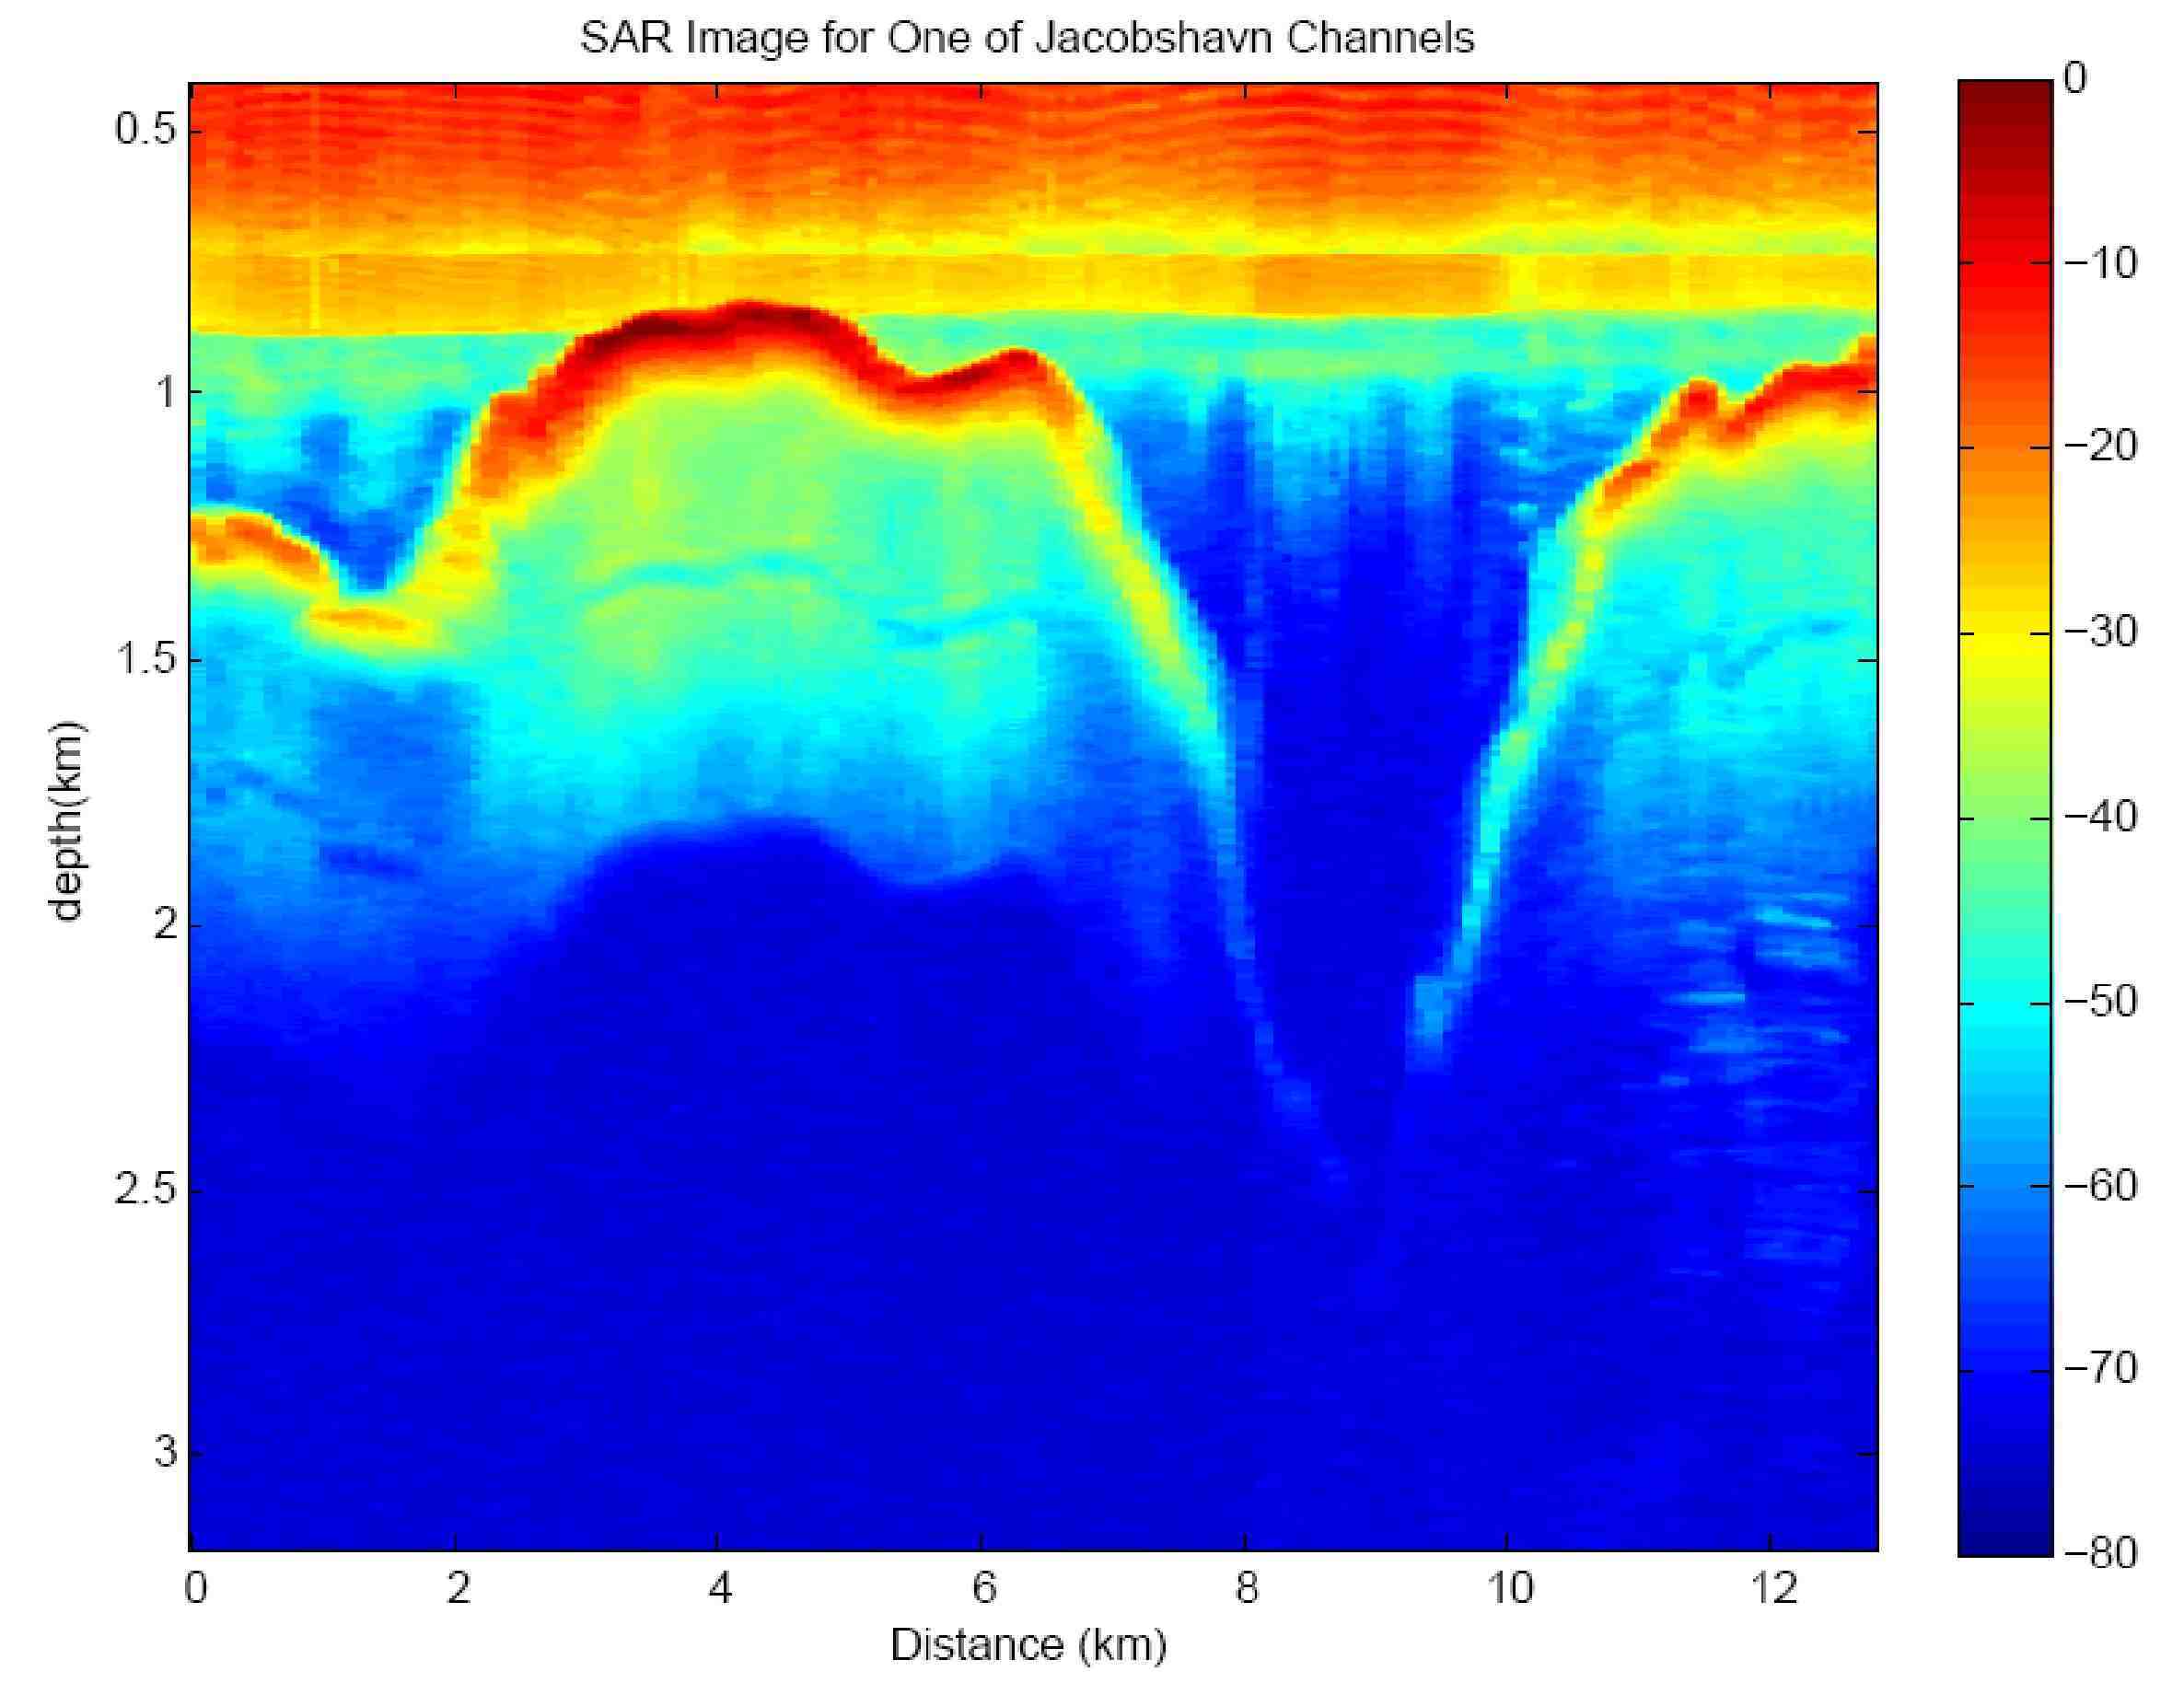 Image of a radar echogram of the Jakobshavn channel.